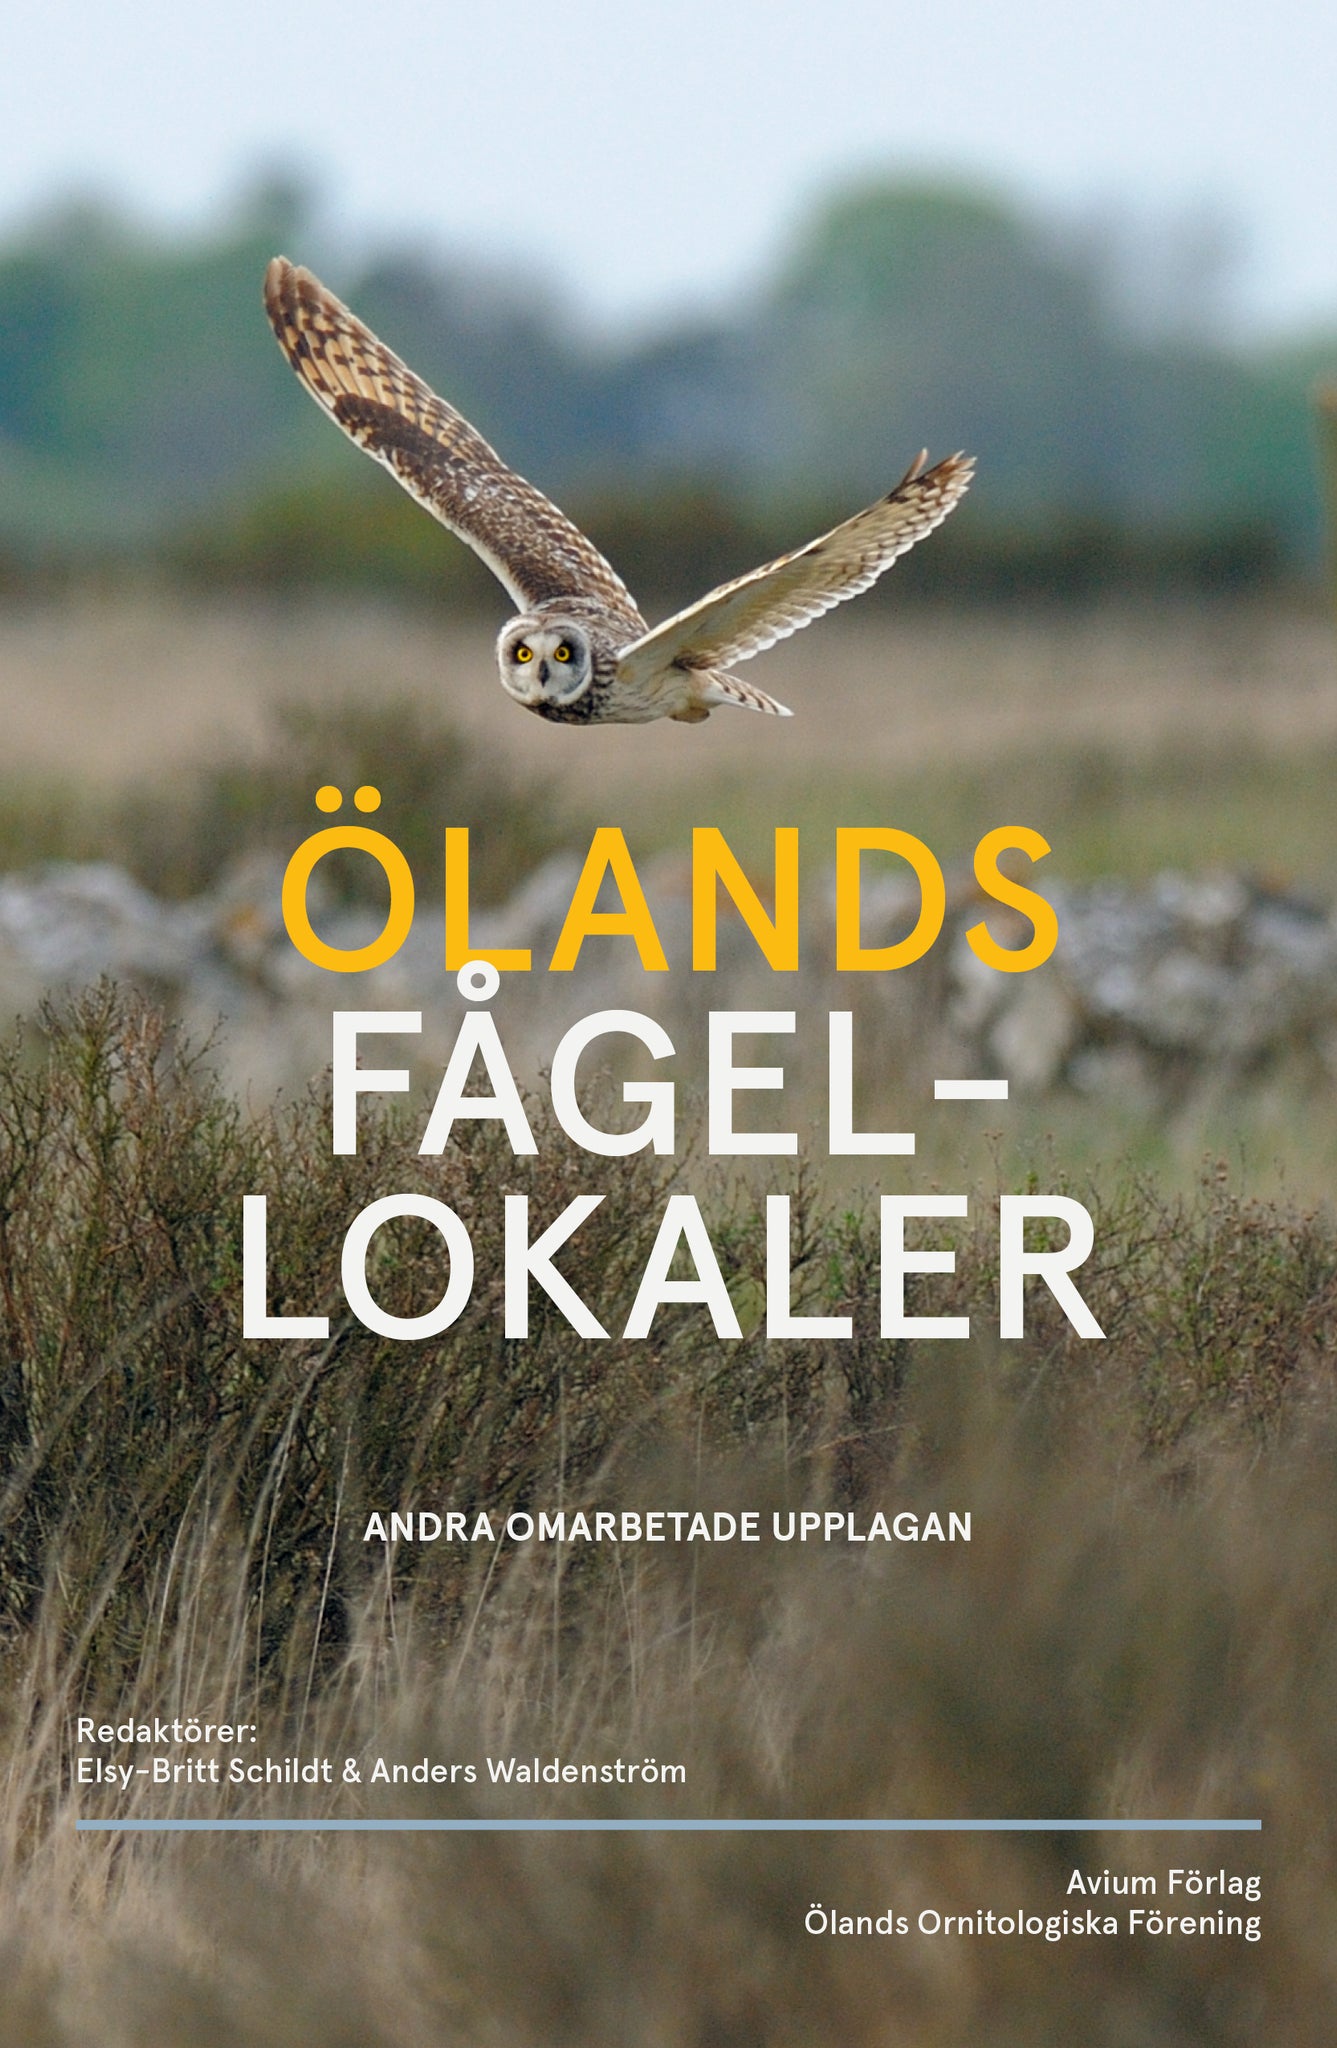 Ölands fågellokaler – Andra omarbetade upplagan (Red. Schildt & Waldenström, 2022)